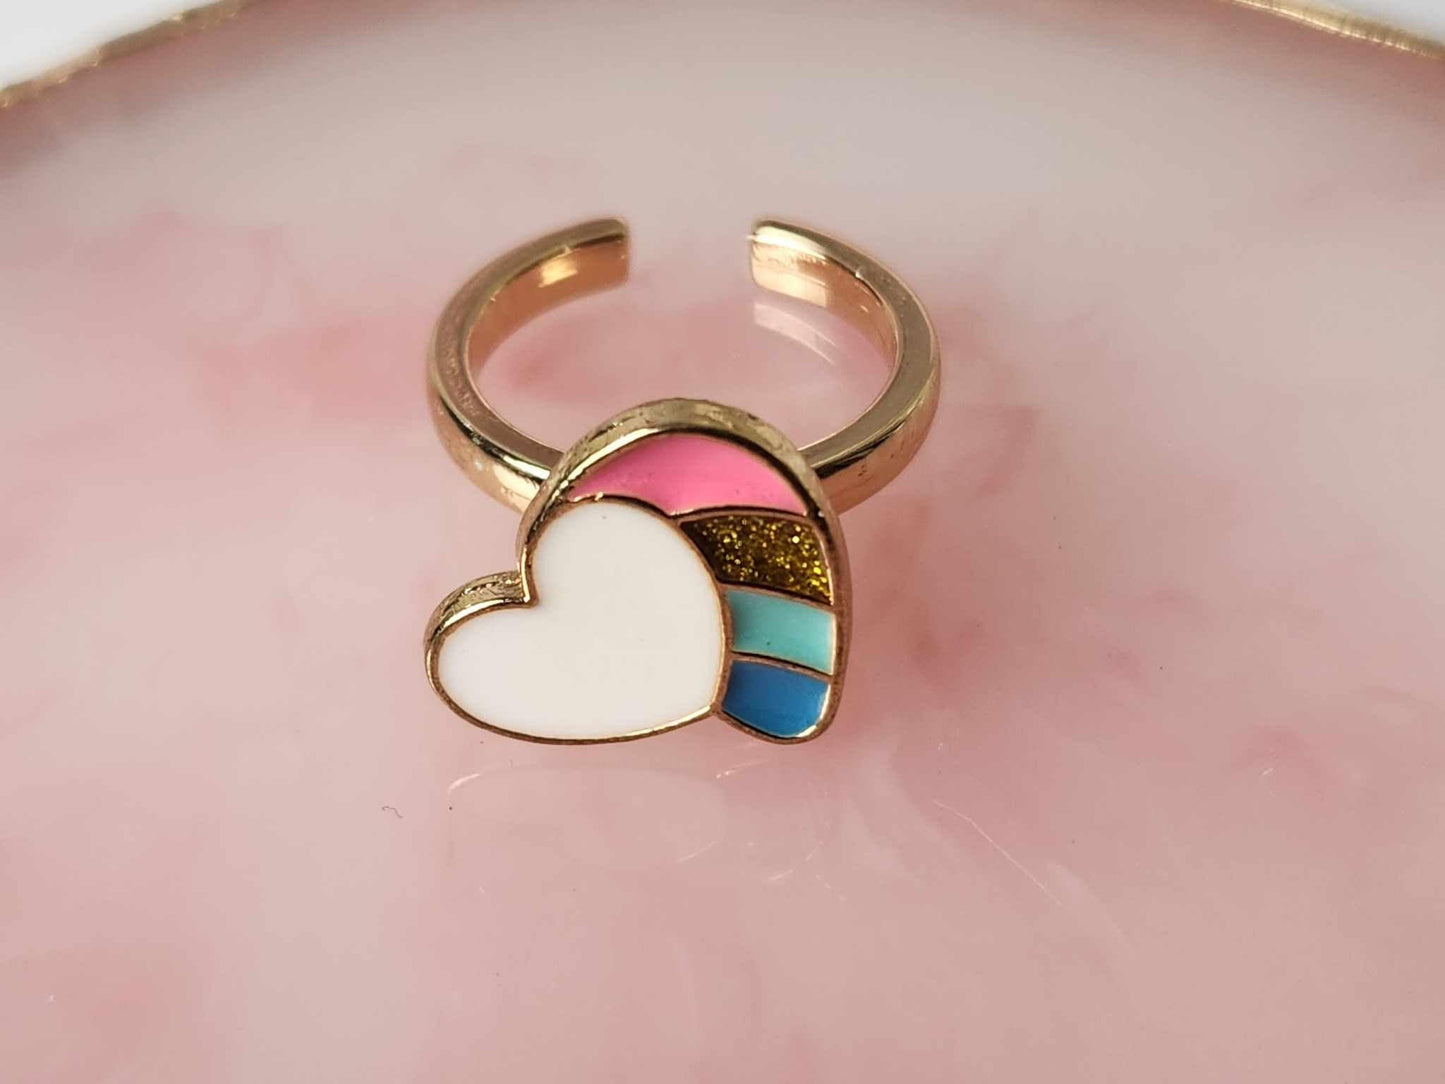 The Sarah - White Love Heart Kids Fidget Spinner Ring